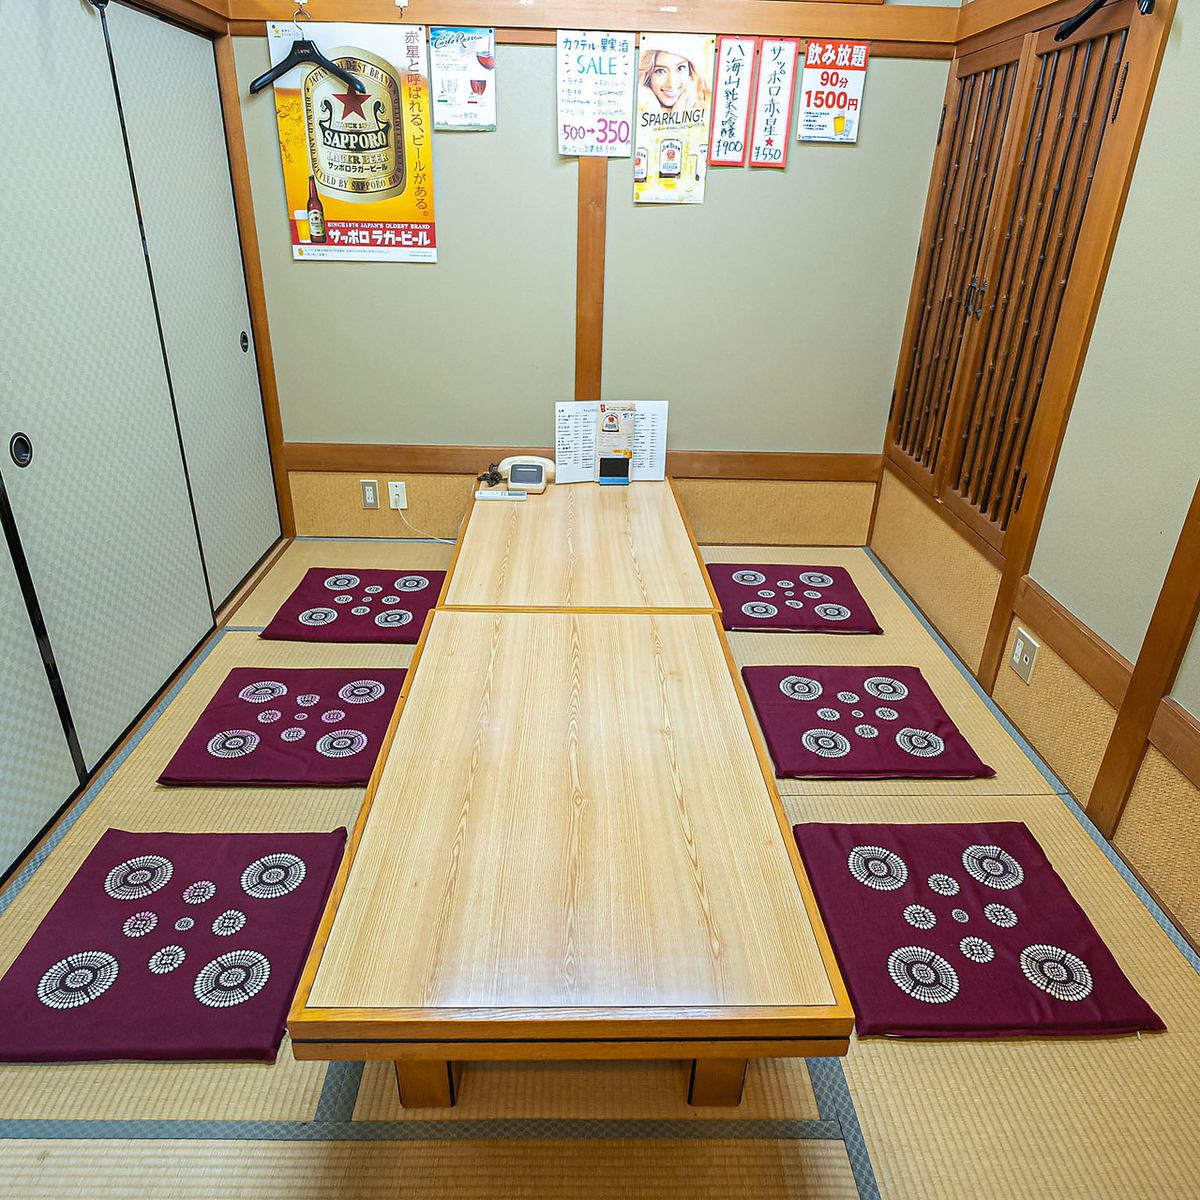 非常适合晚宴和公司宴会！在所有座位都是榻榻米垫的日式空间中享受片刻。